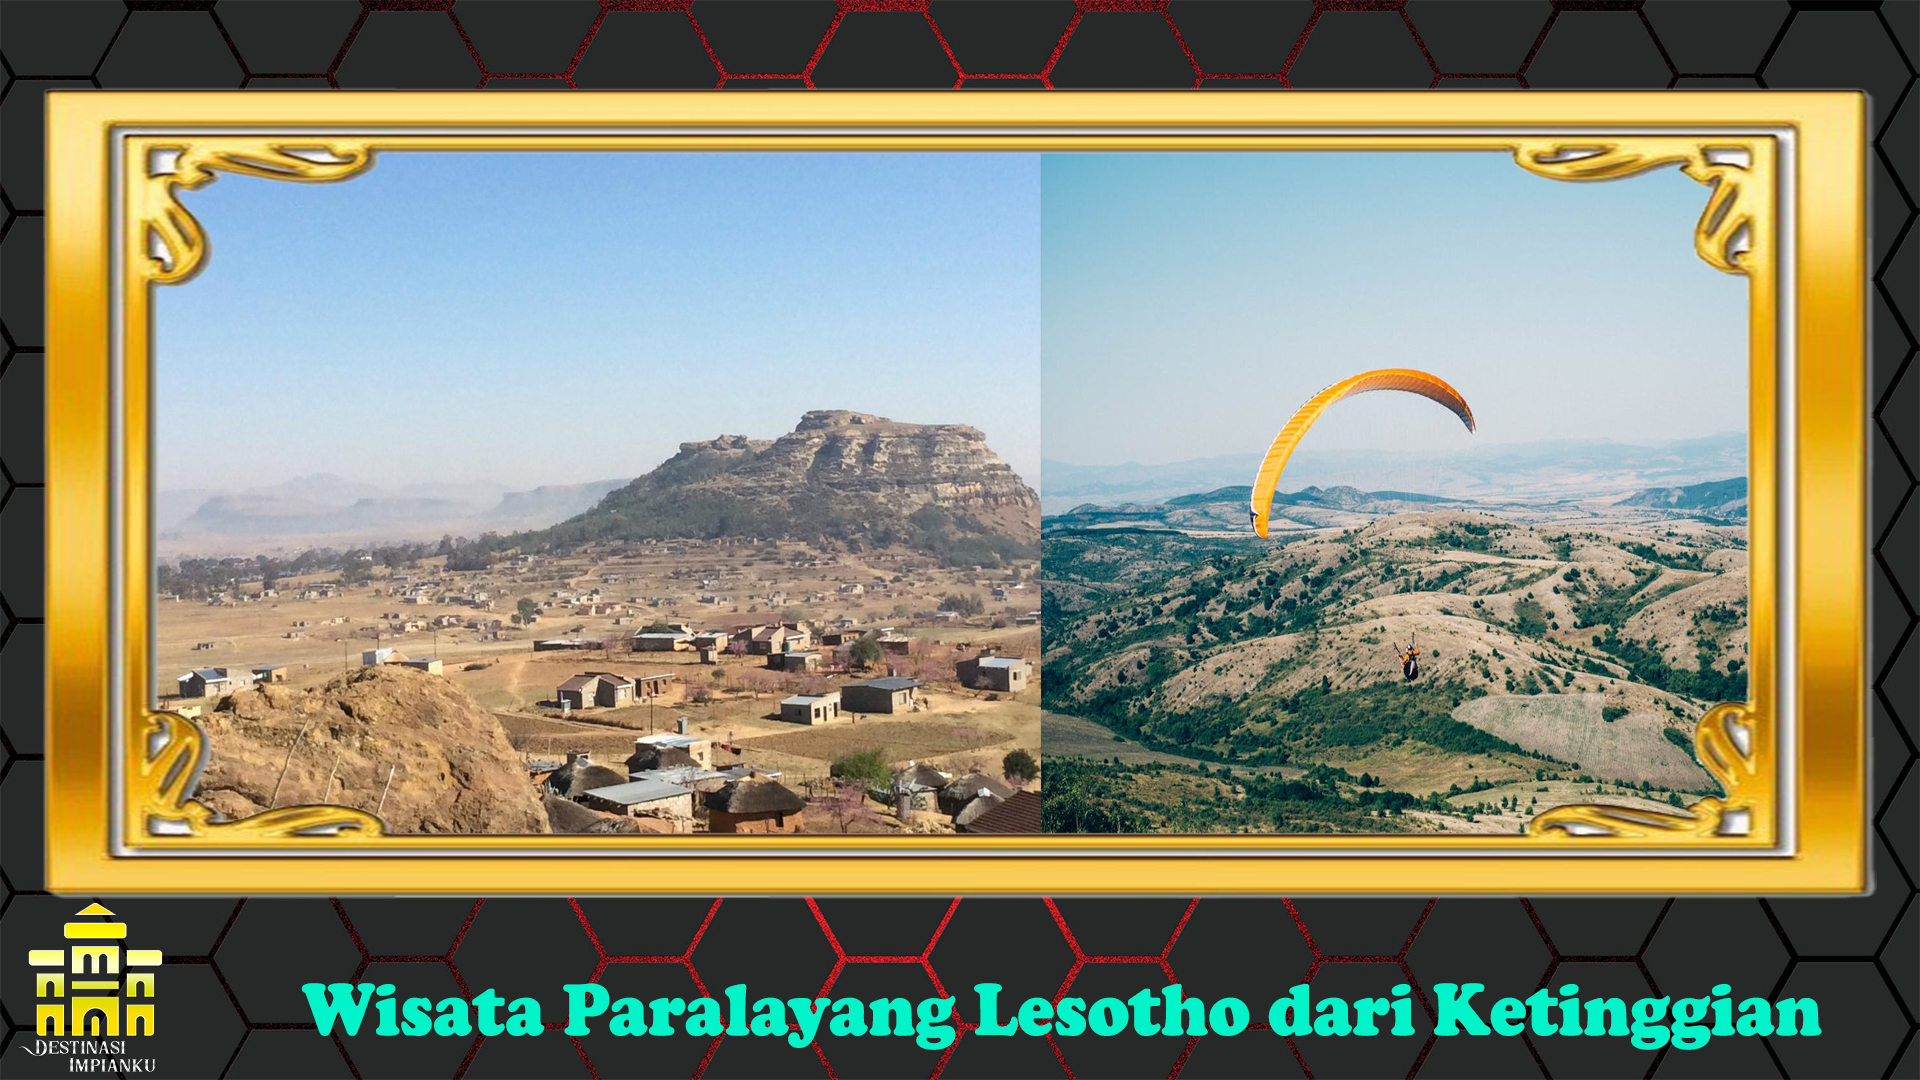 Wisata Paralayang Lesotho dari Ketinggian